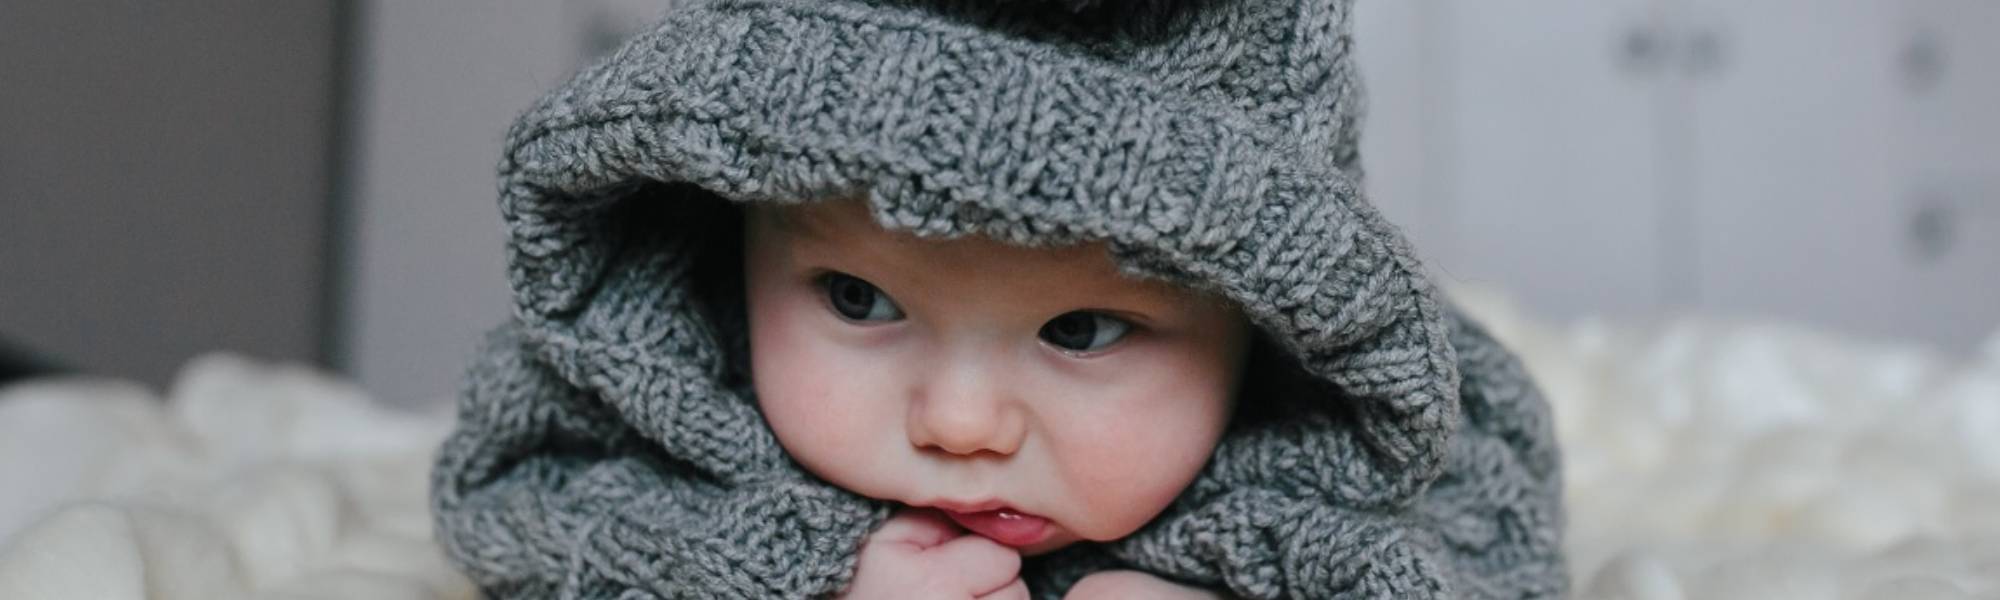 Bebeklerde ve Çocuklarda Soğuk Terleme Neden Olur?